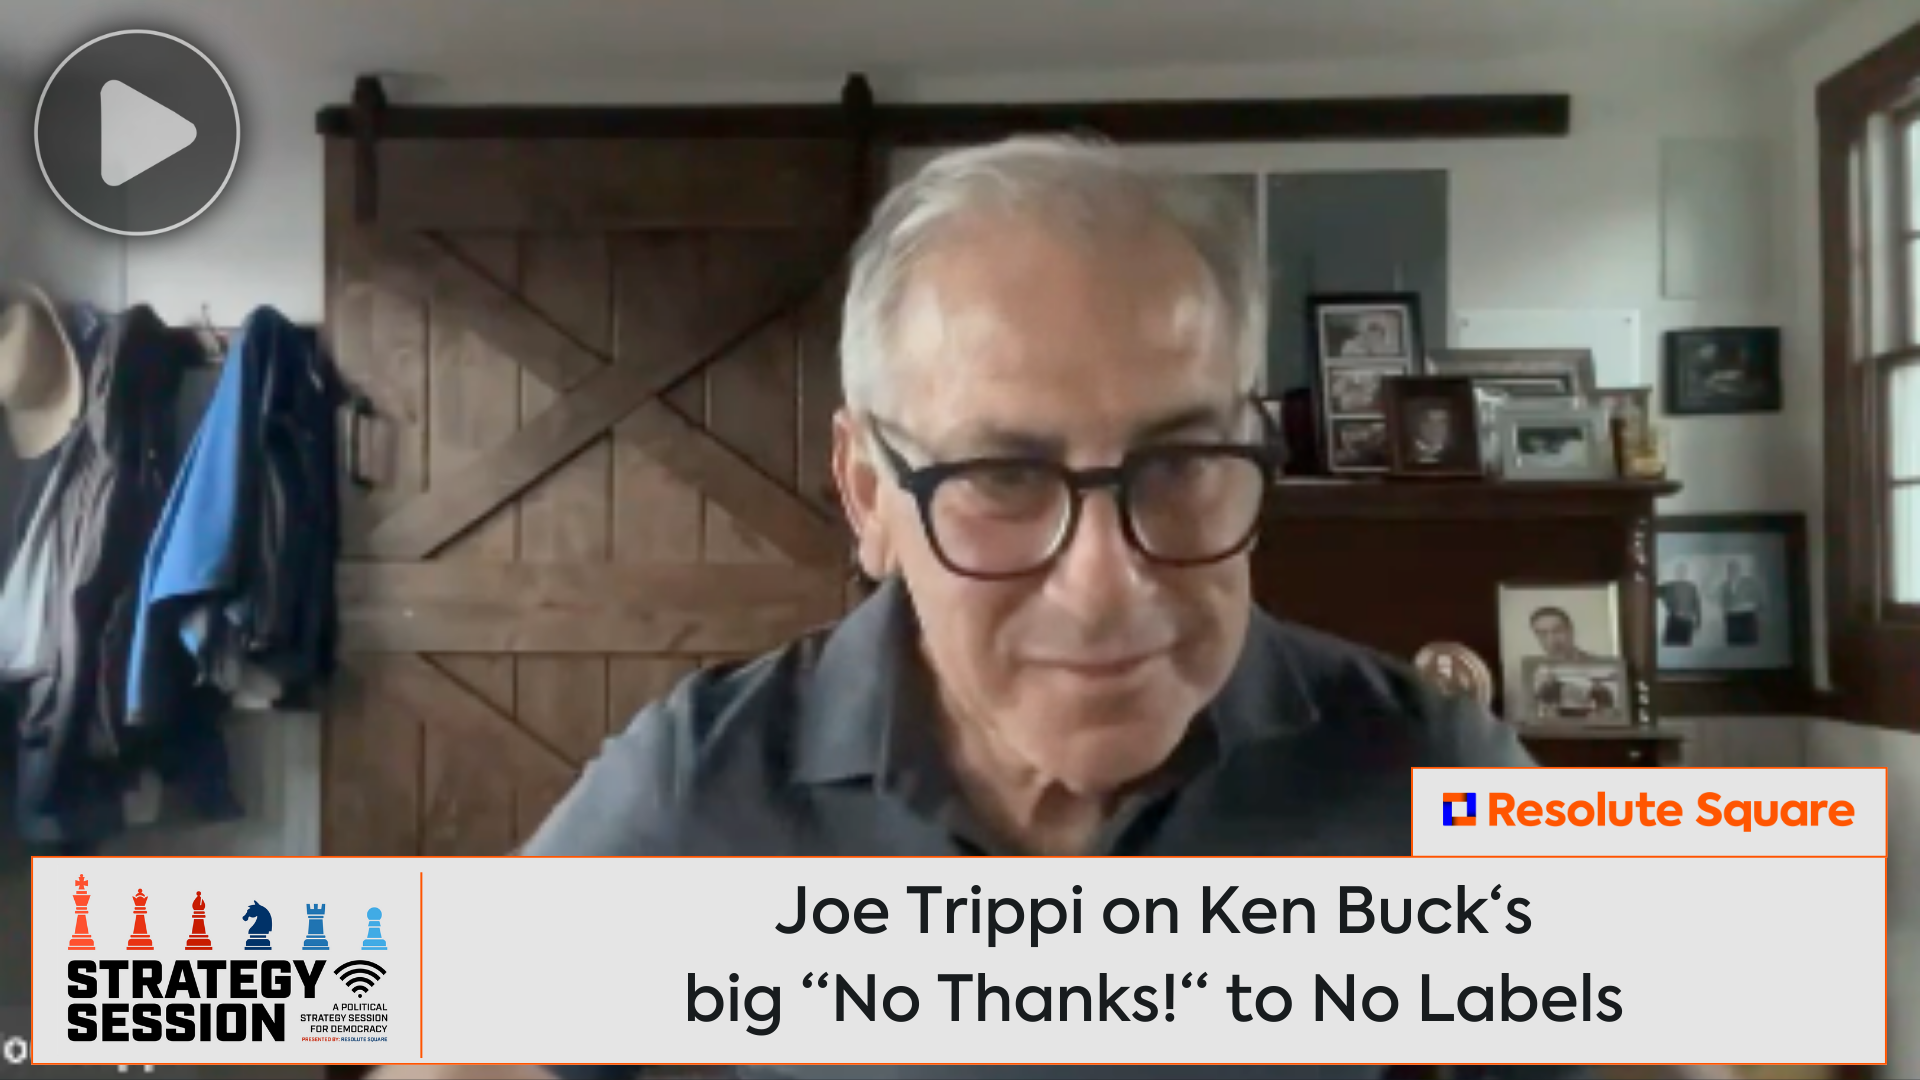 Ken Buck Tells No Labels, "No Way"